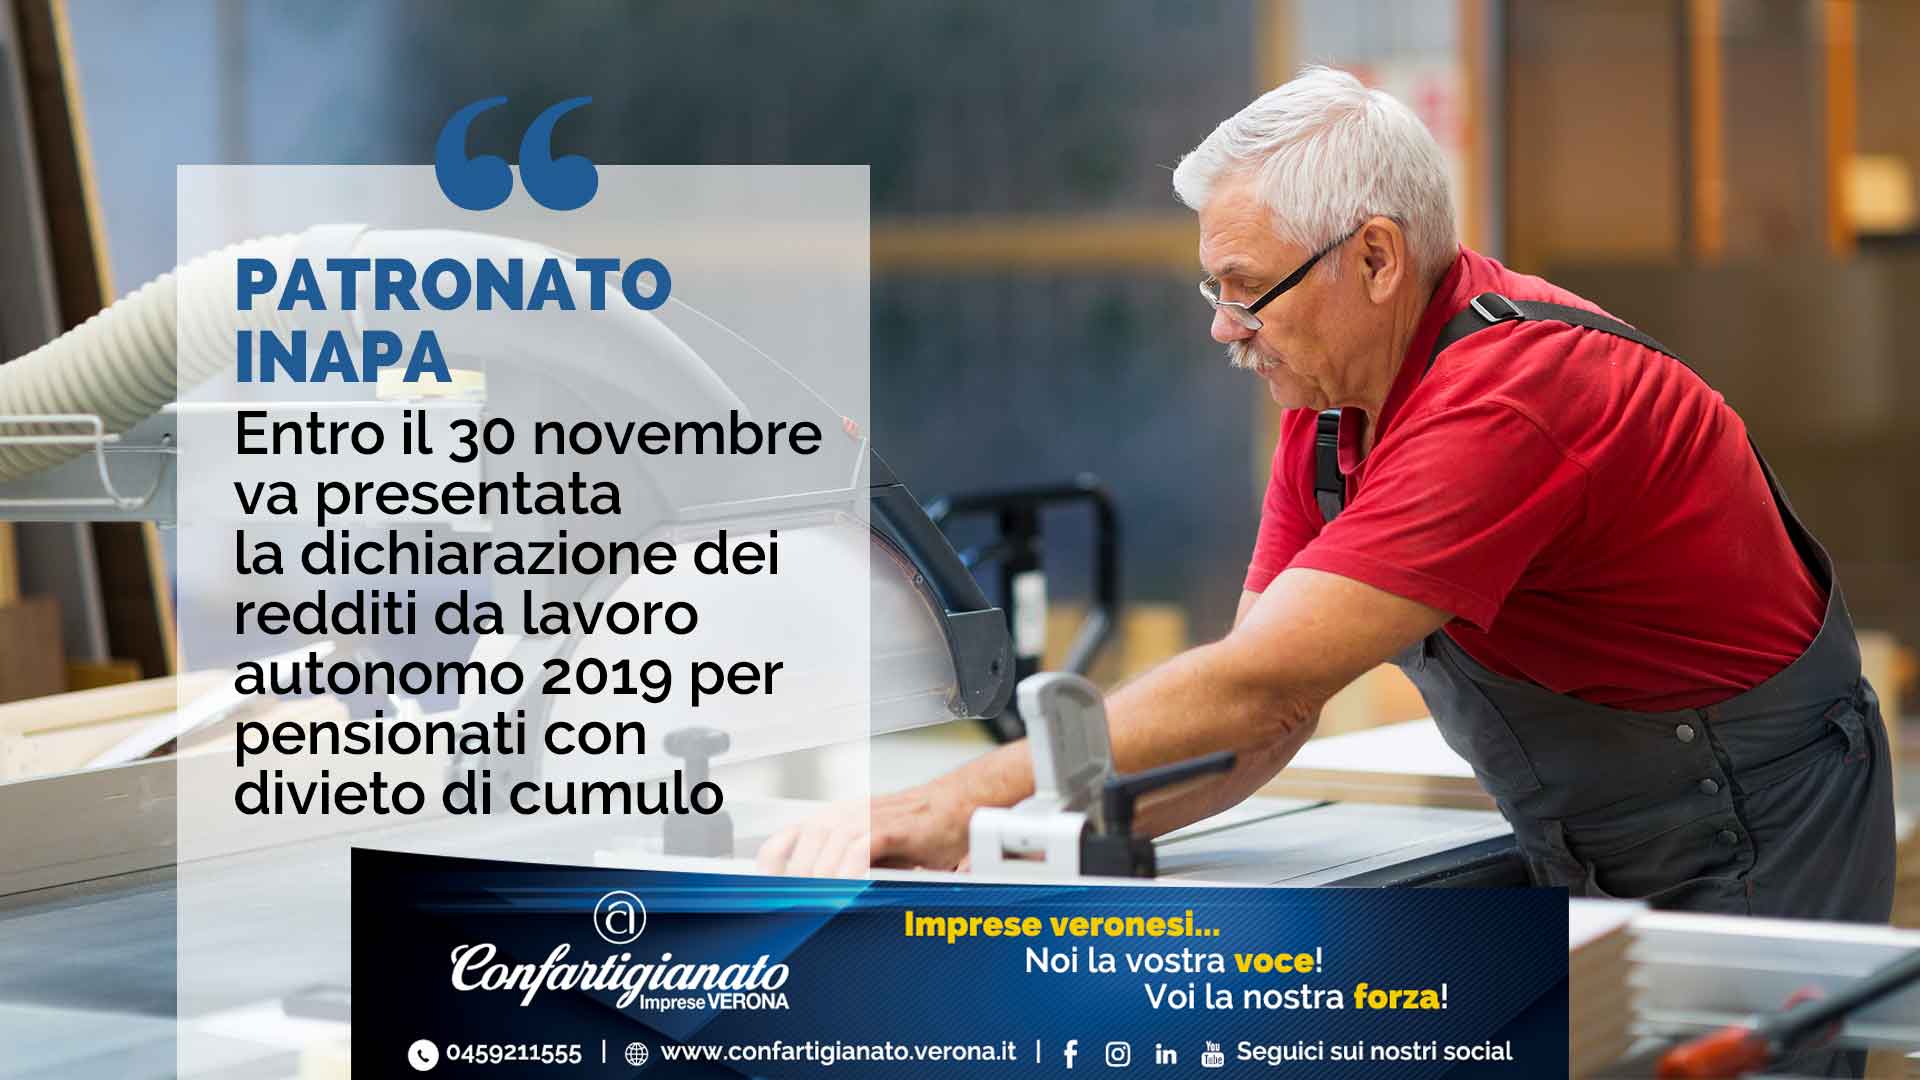 PATRONATO INAPA – Entro il 30 novembre va presentata la dichiarazione redditi da lavoro autonomo 2019 per pensionati con divieto di cumulo